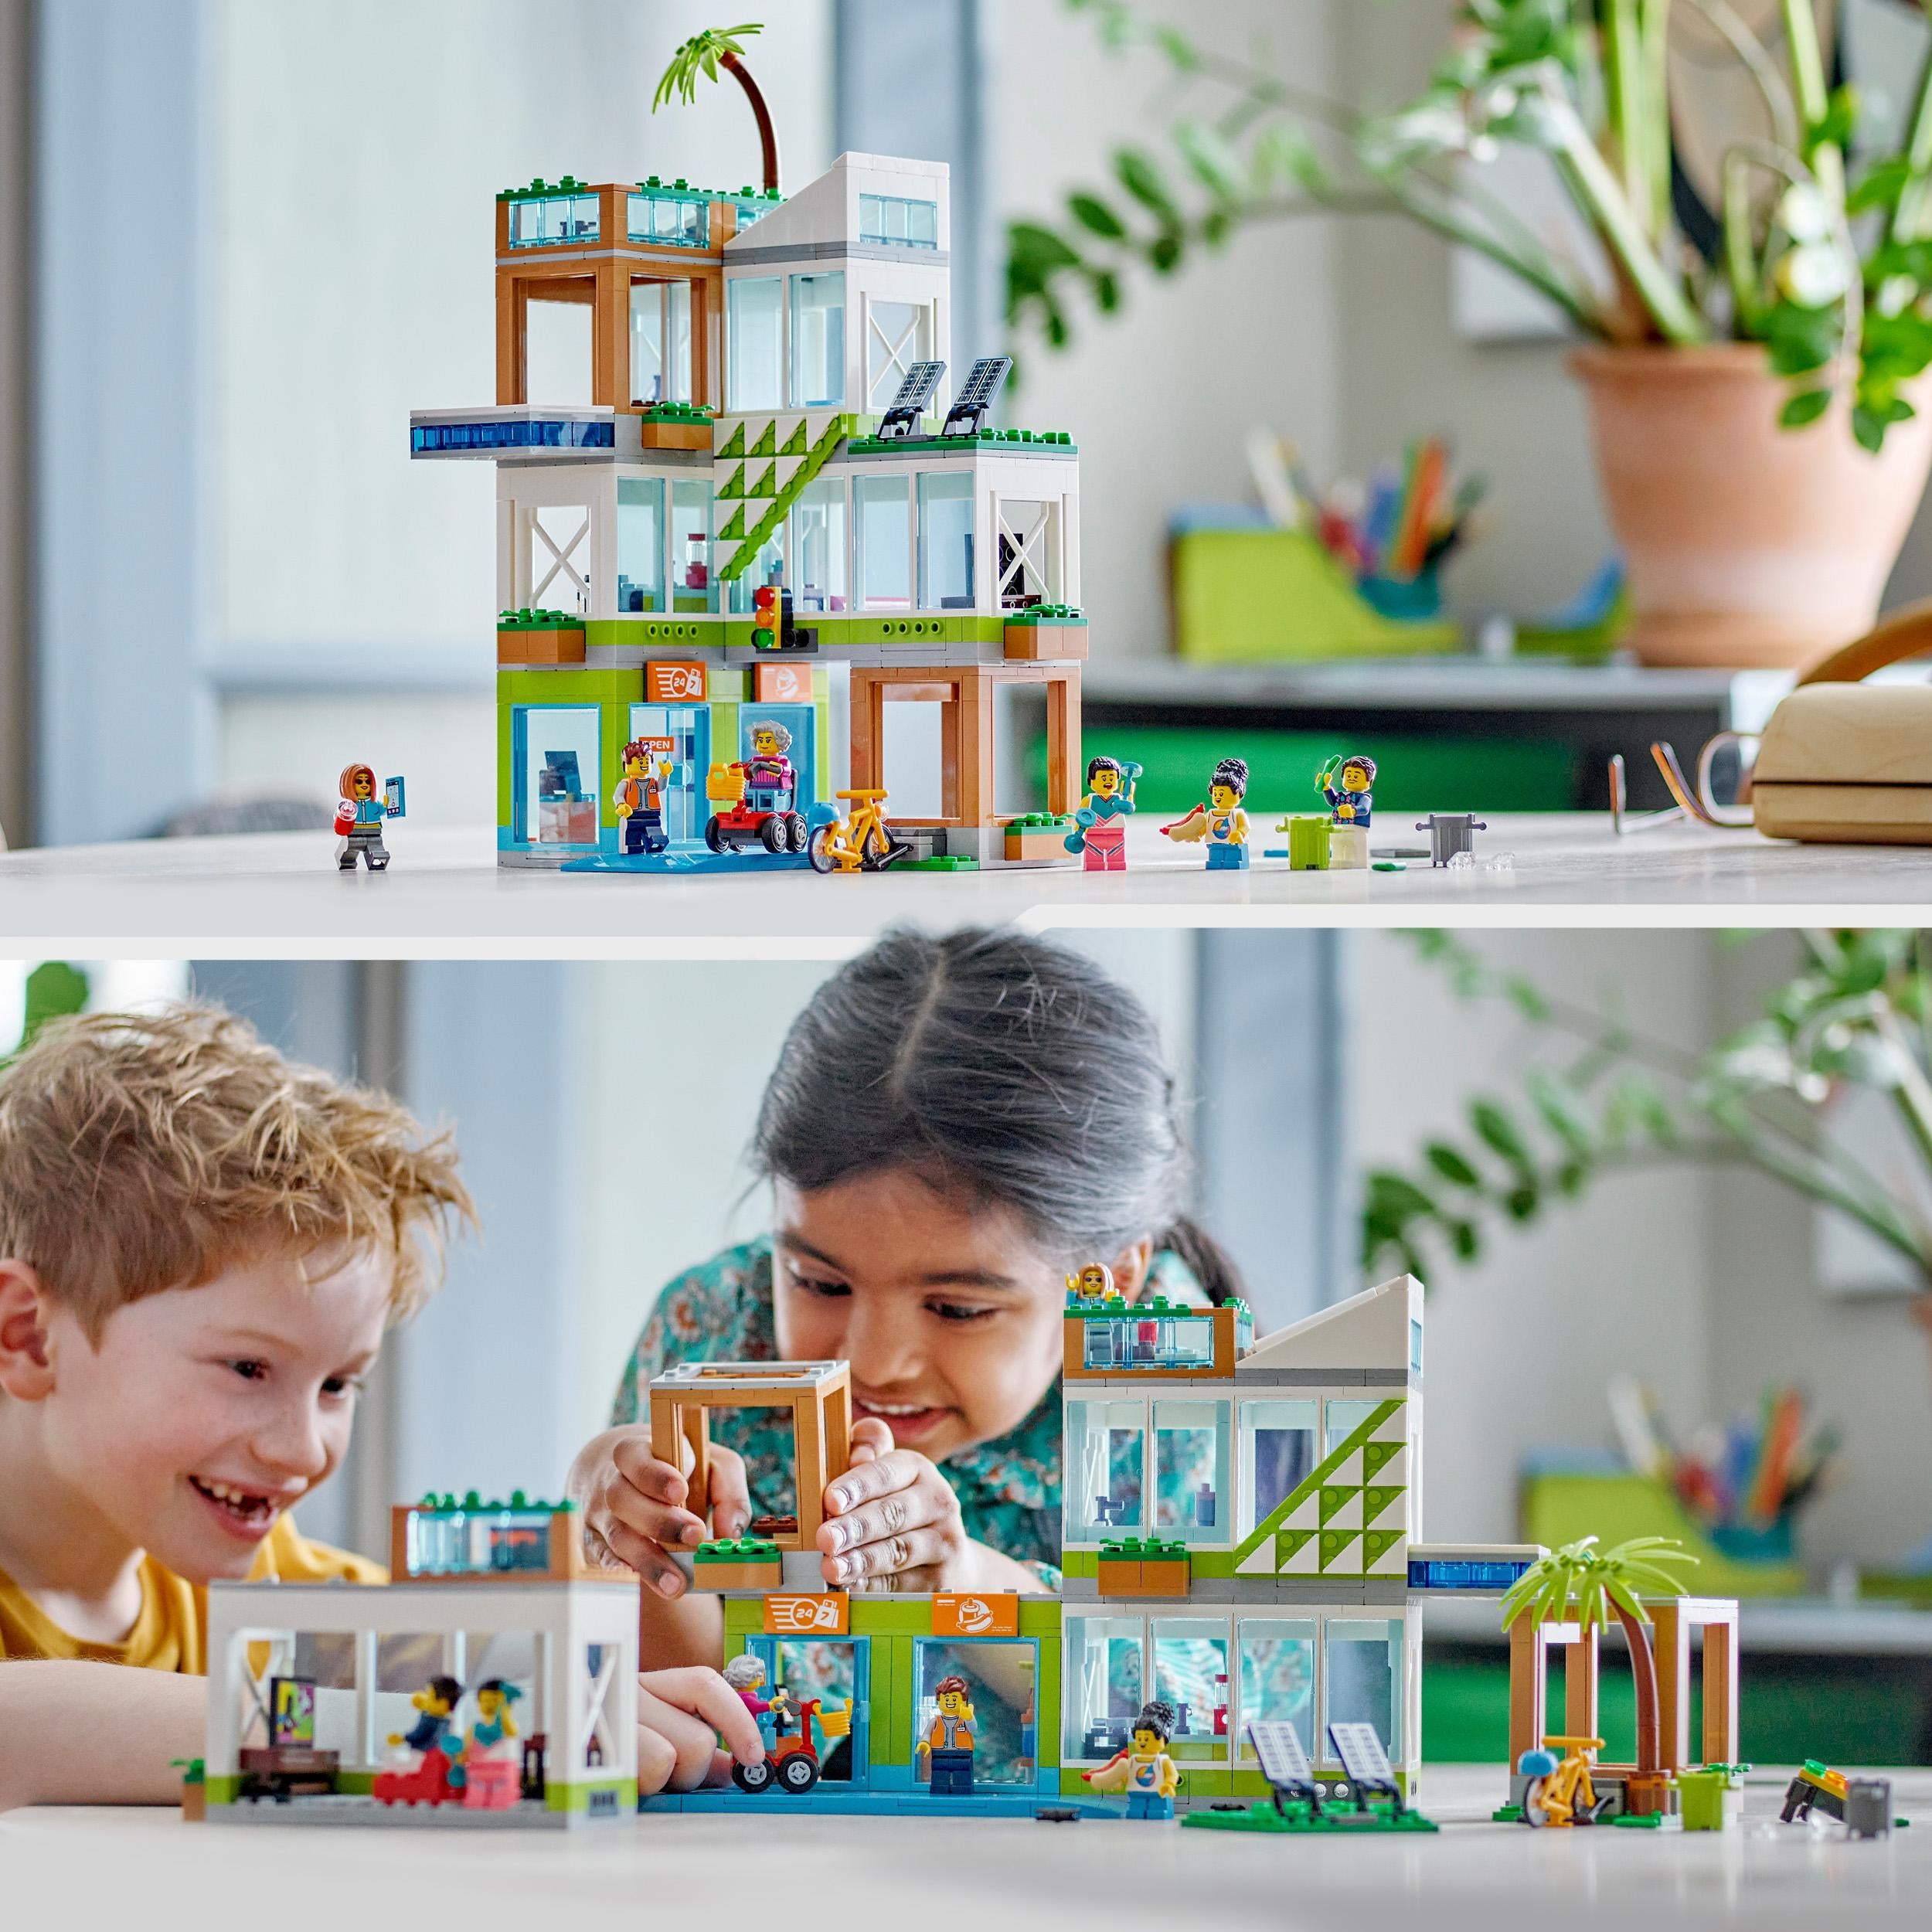 LEGO City 60365 Condomini Modular Building Set con Stanze Combinabili e 6  Minifigure Regalo Compleanno per